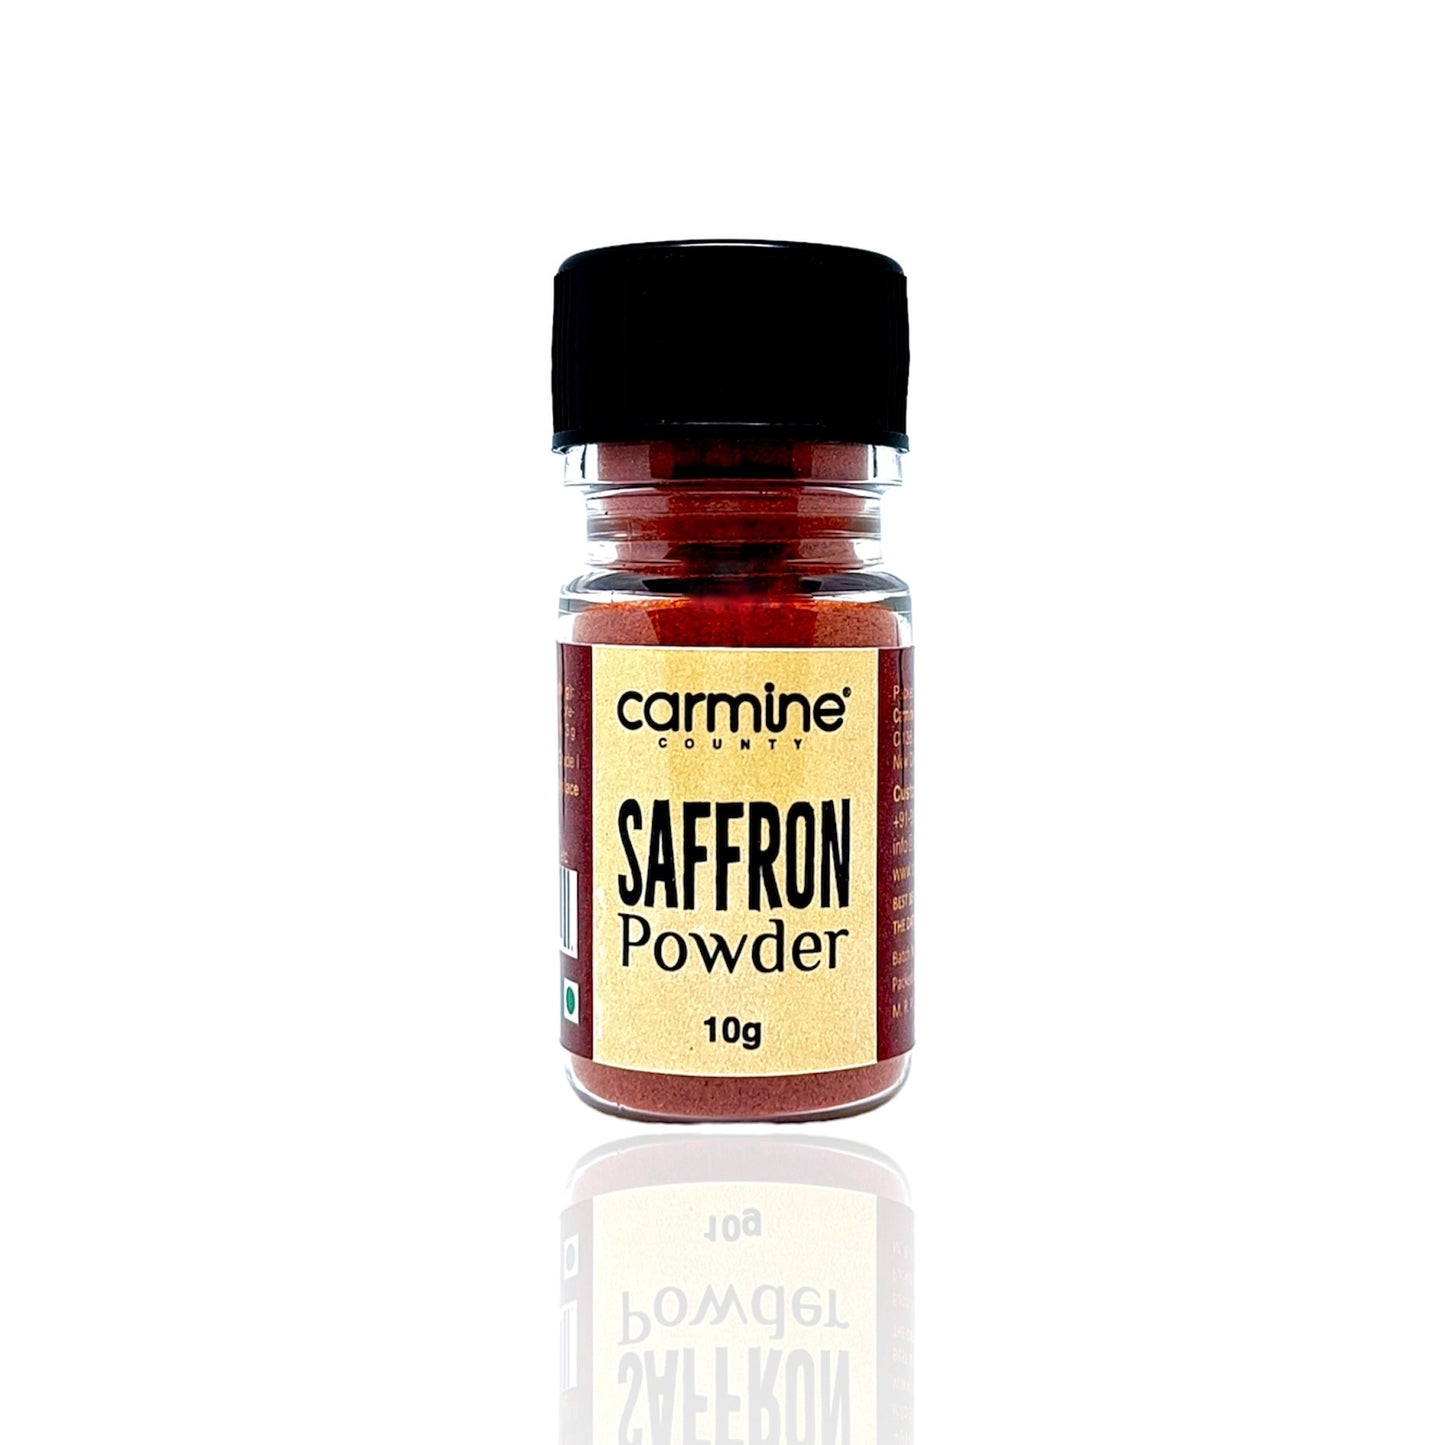 Carmine County Premium Saffron Powder